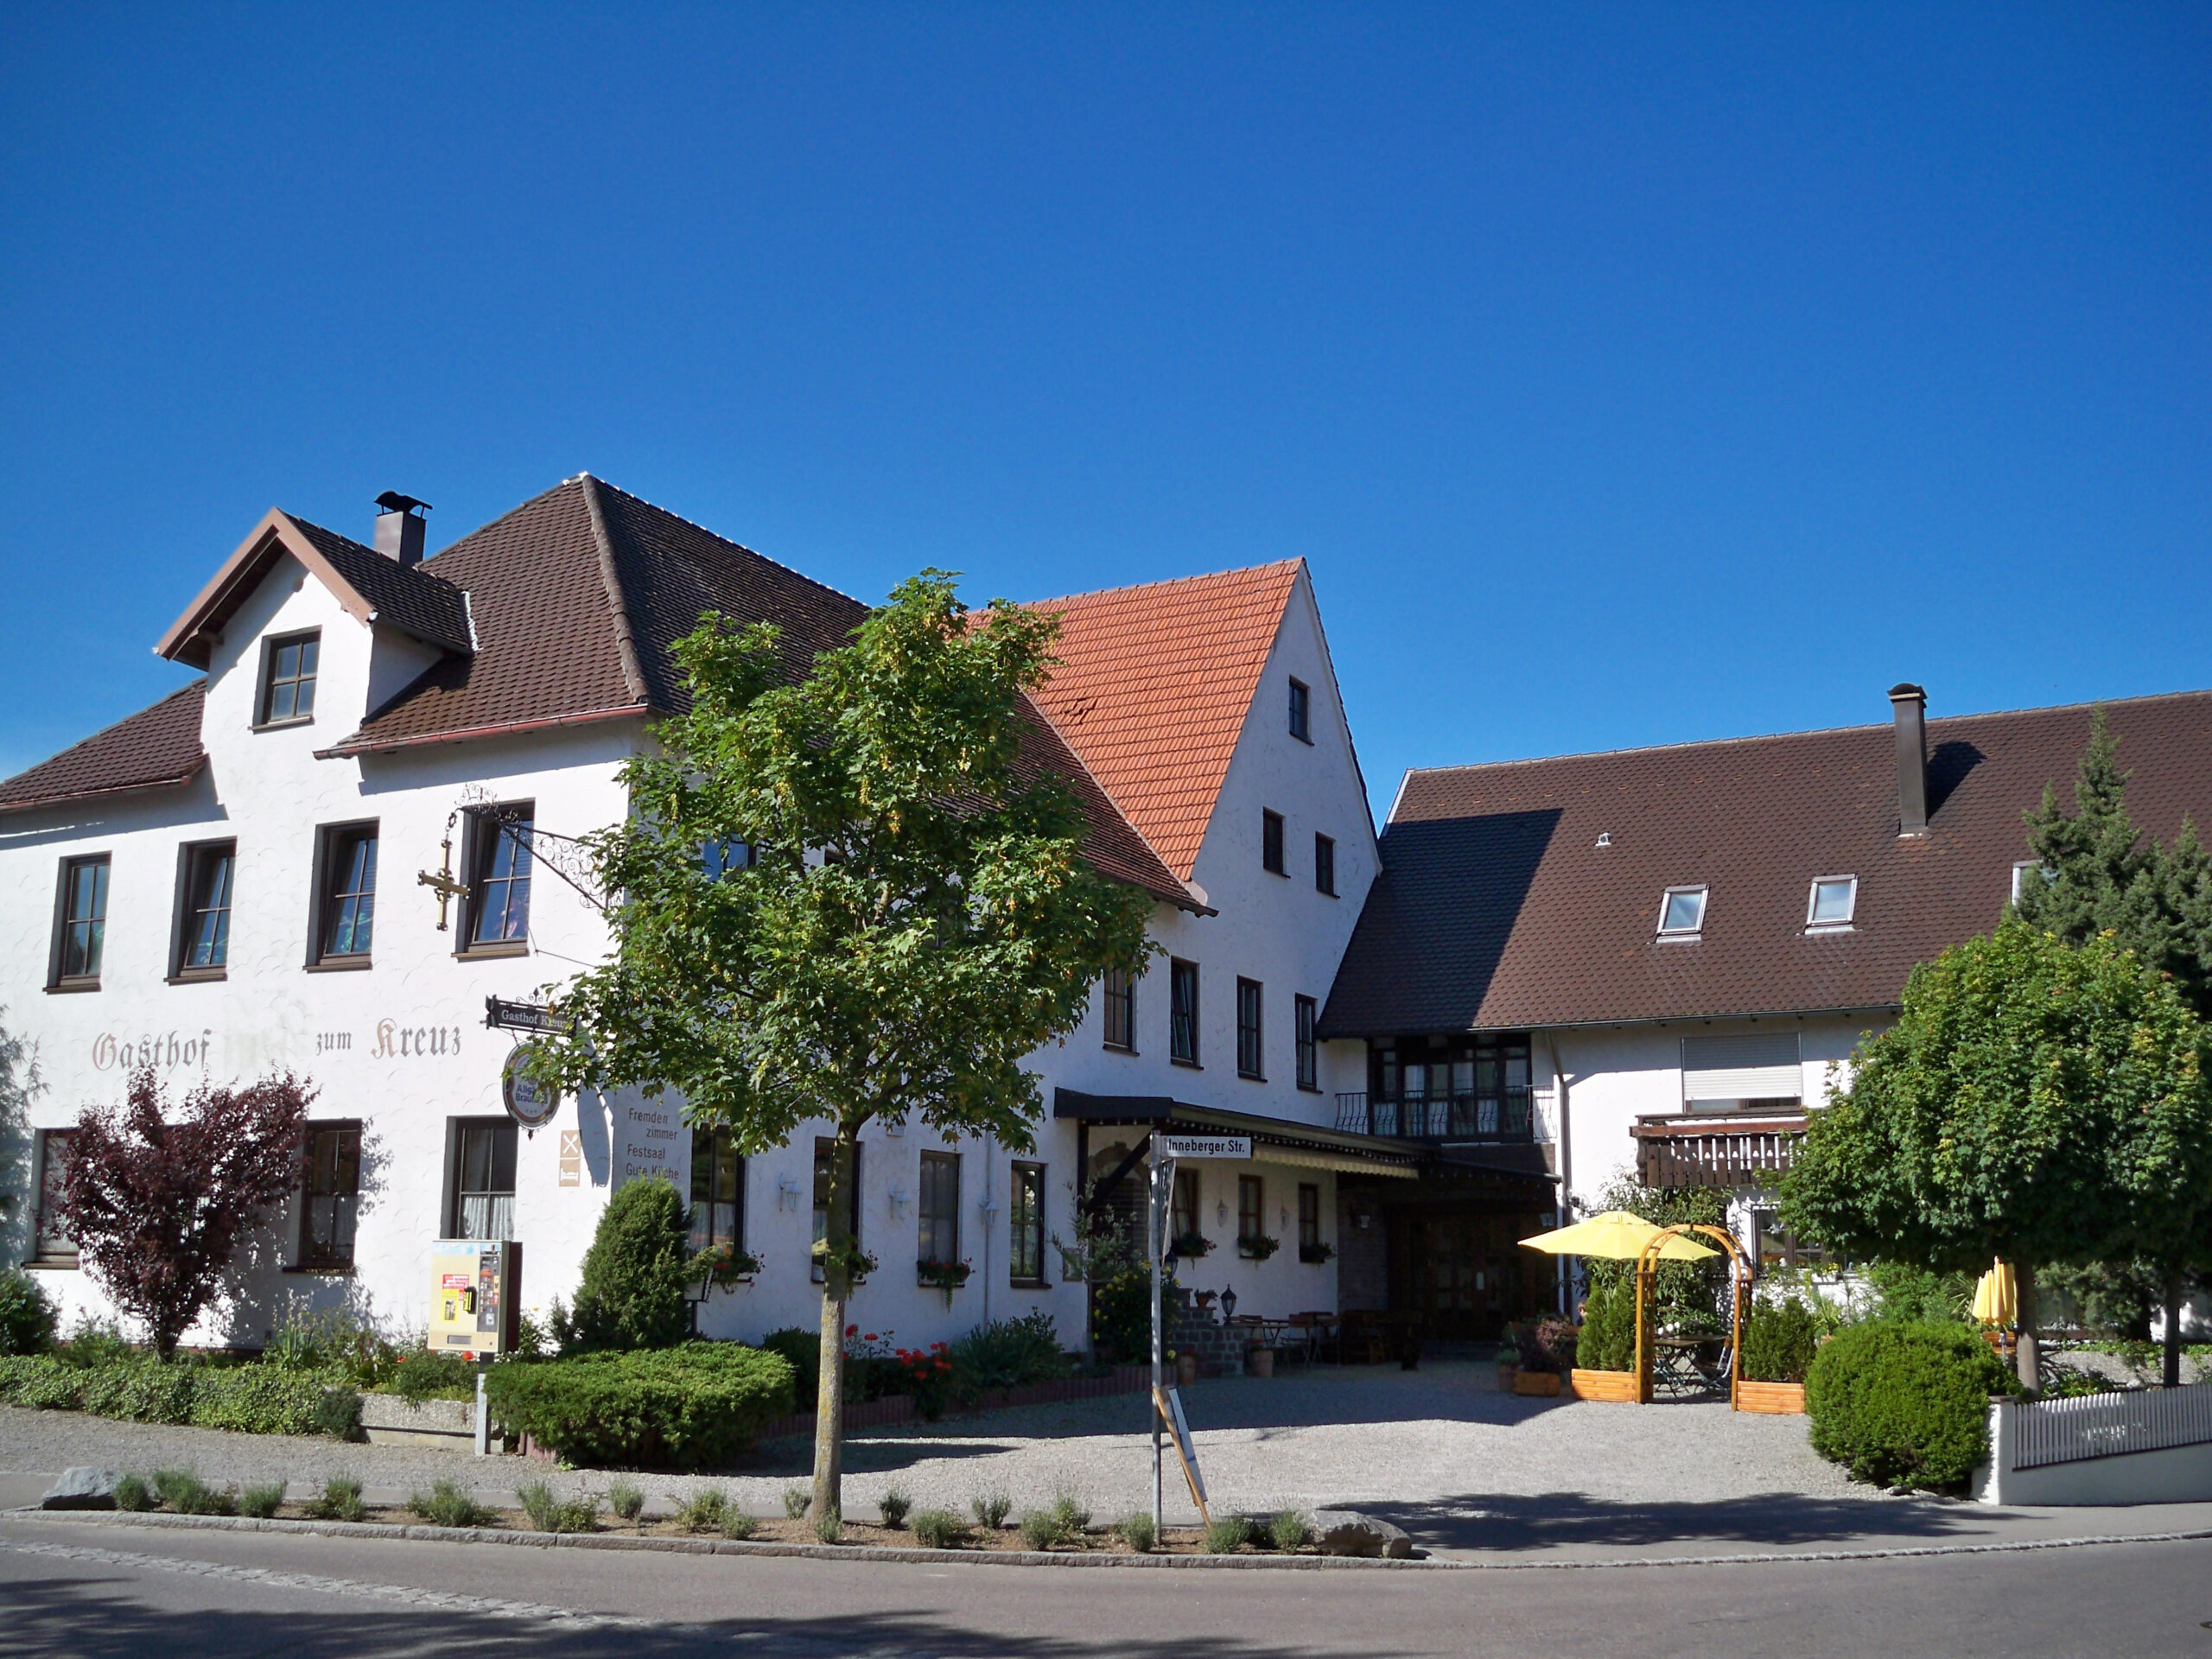 Gasthof & Gästezimmer zum Kreuz in Egg bei Dettingen an der Iller